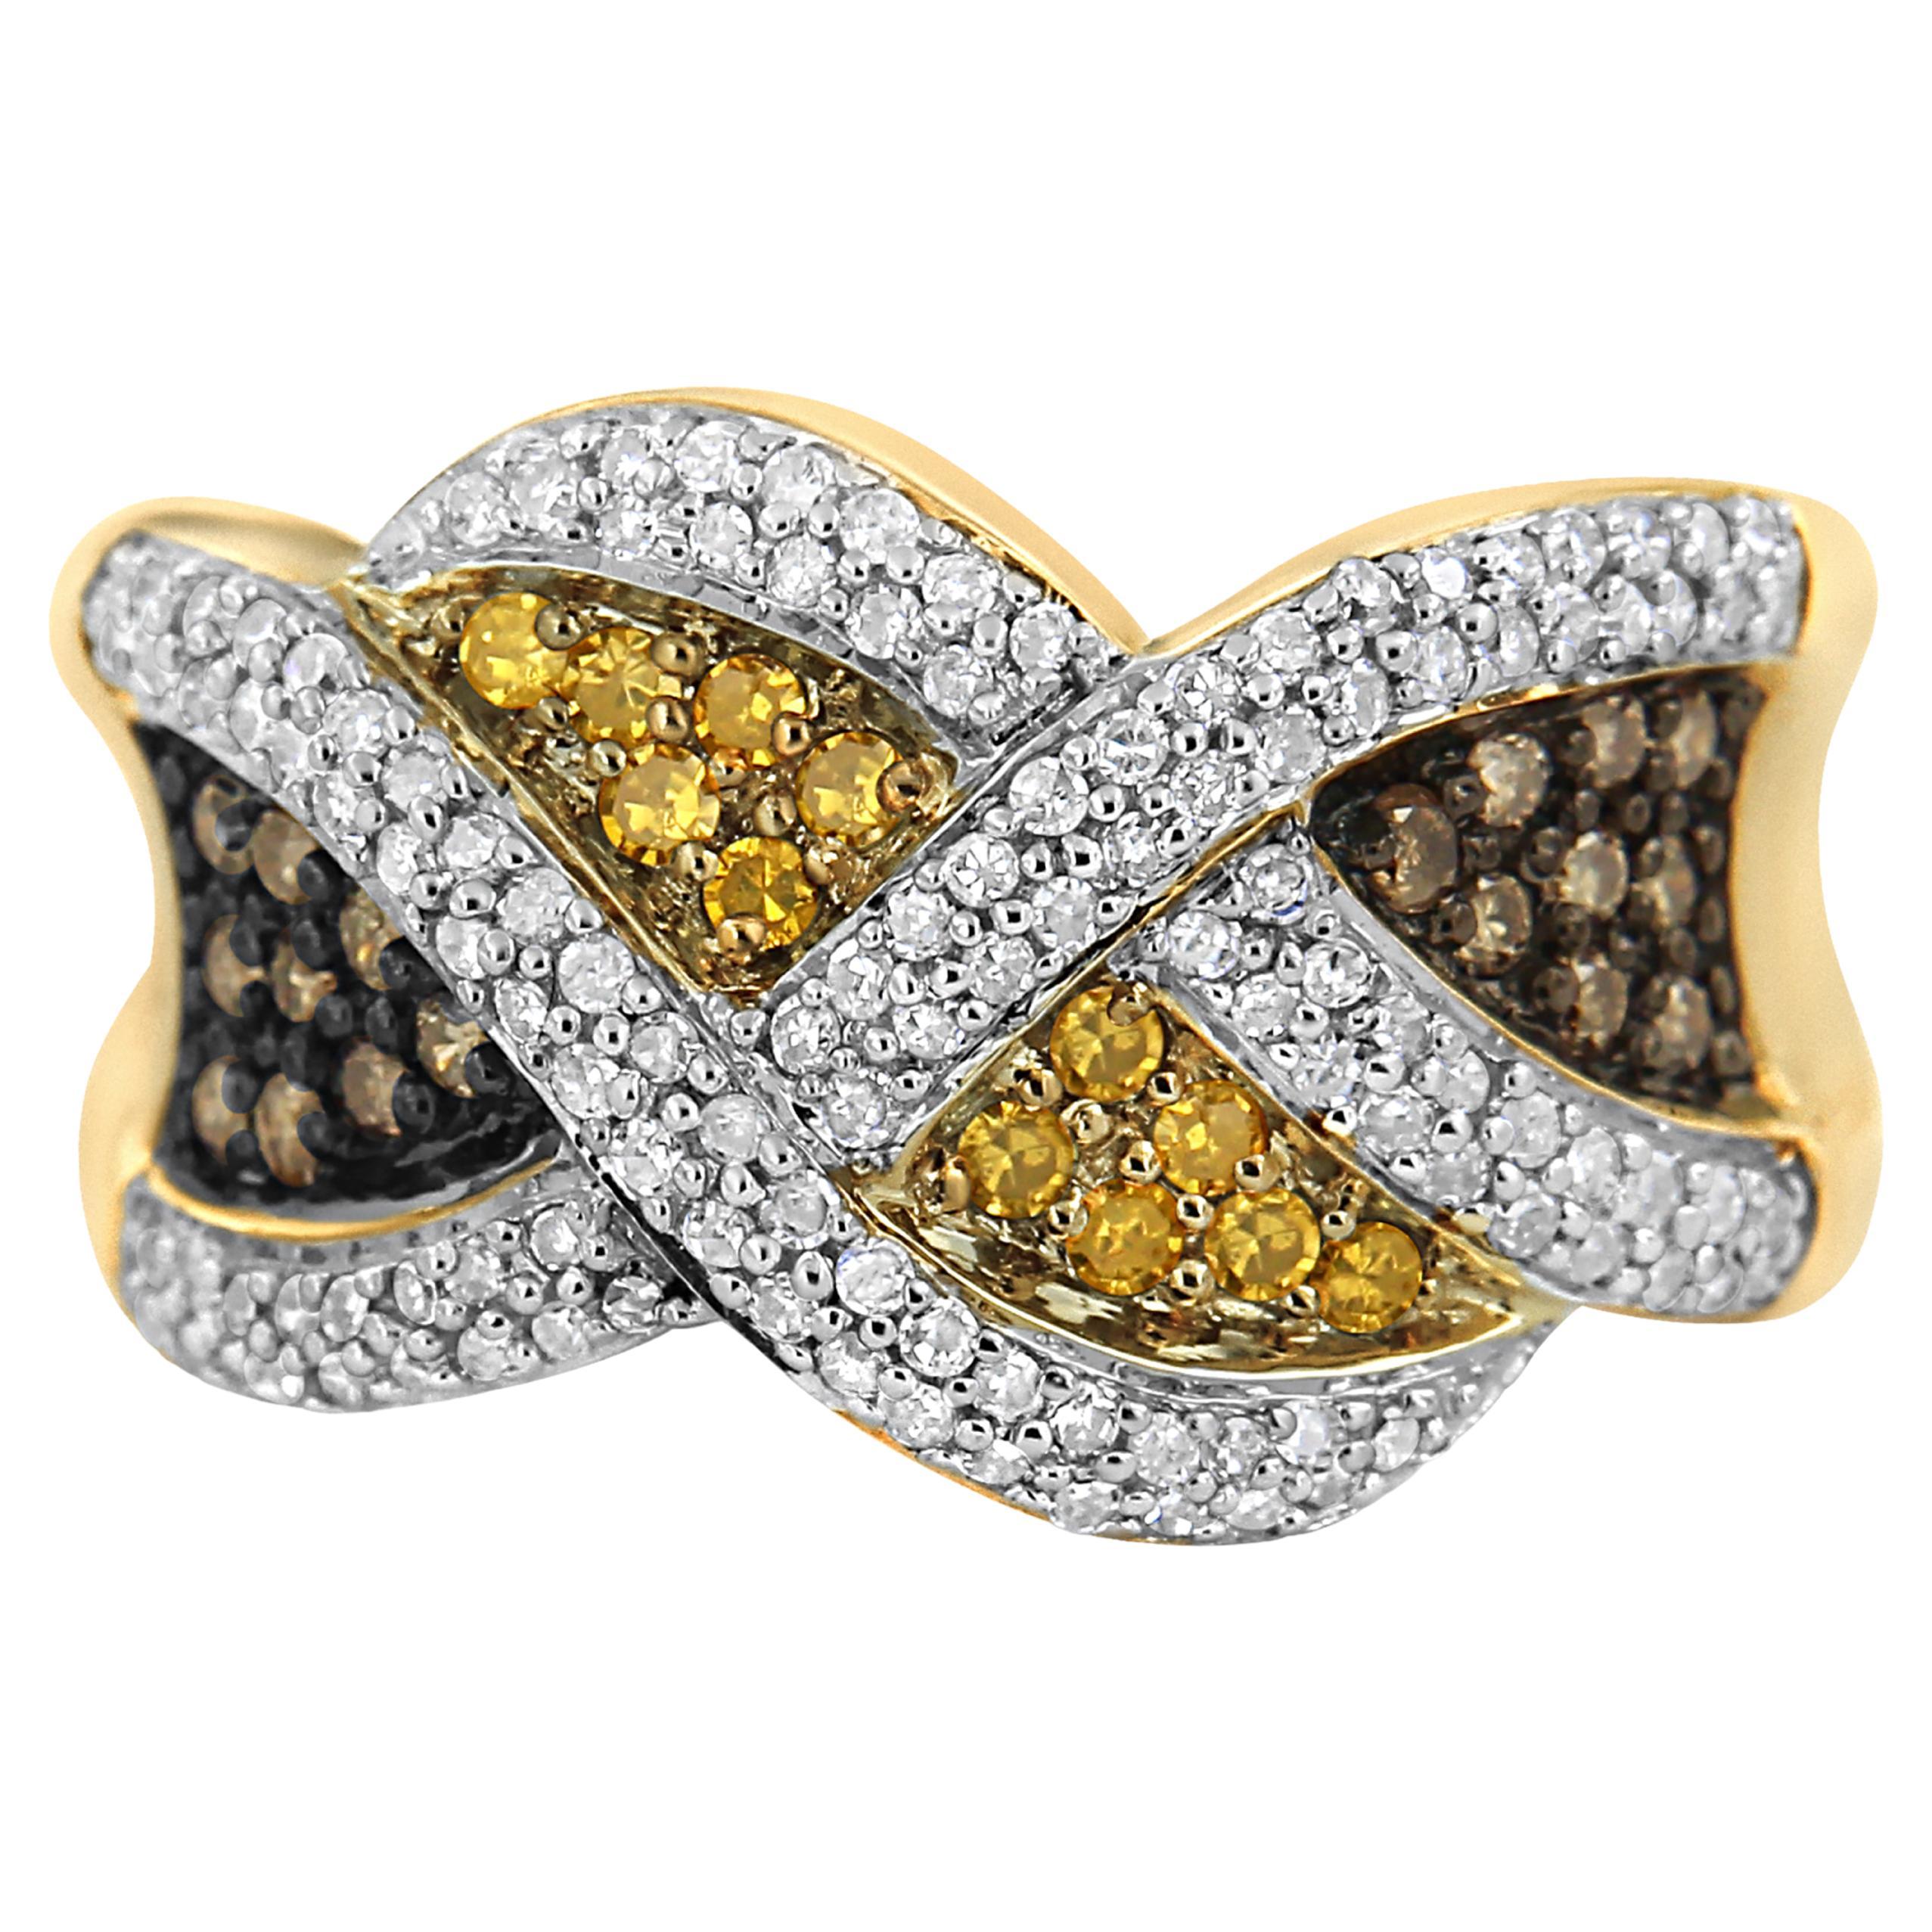 14K Yellow Gold 3/4 Ct Champagne, Yellow & White Diamond Woven Pattern Band Ring